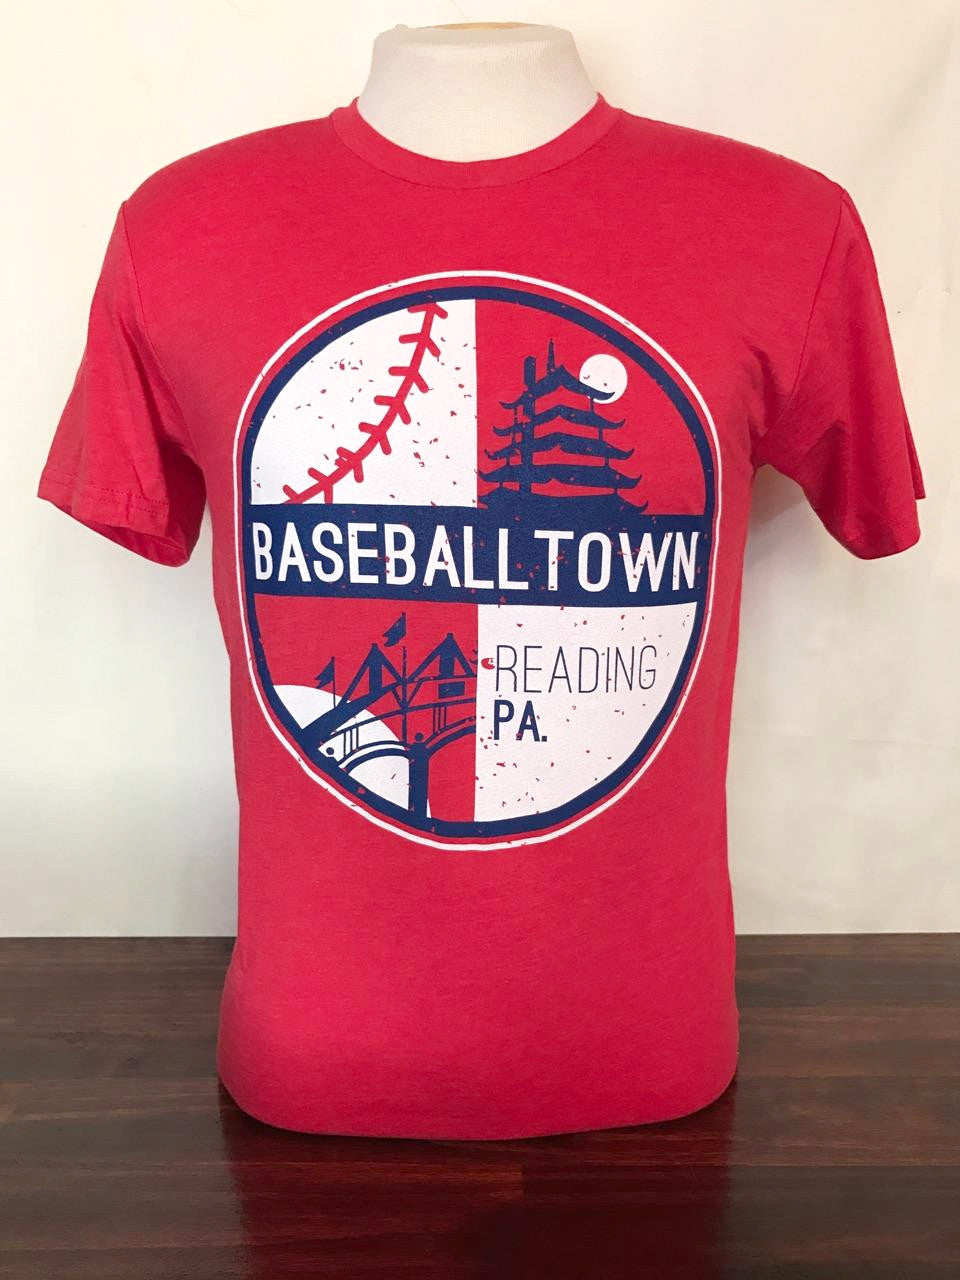 Reading Baseballtown t-shirt